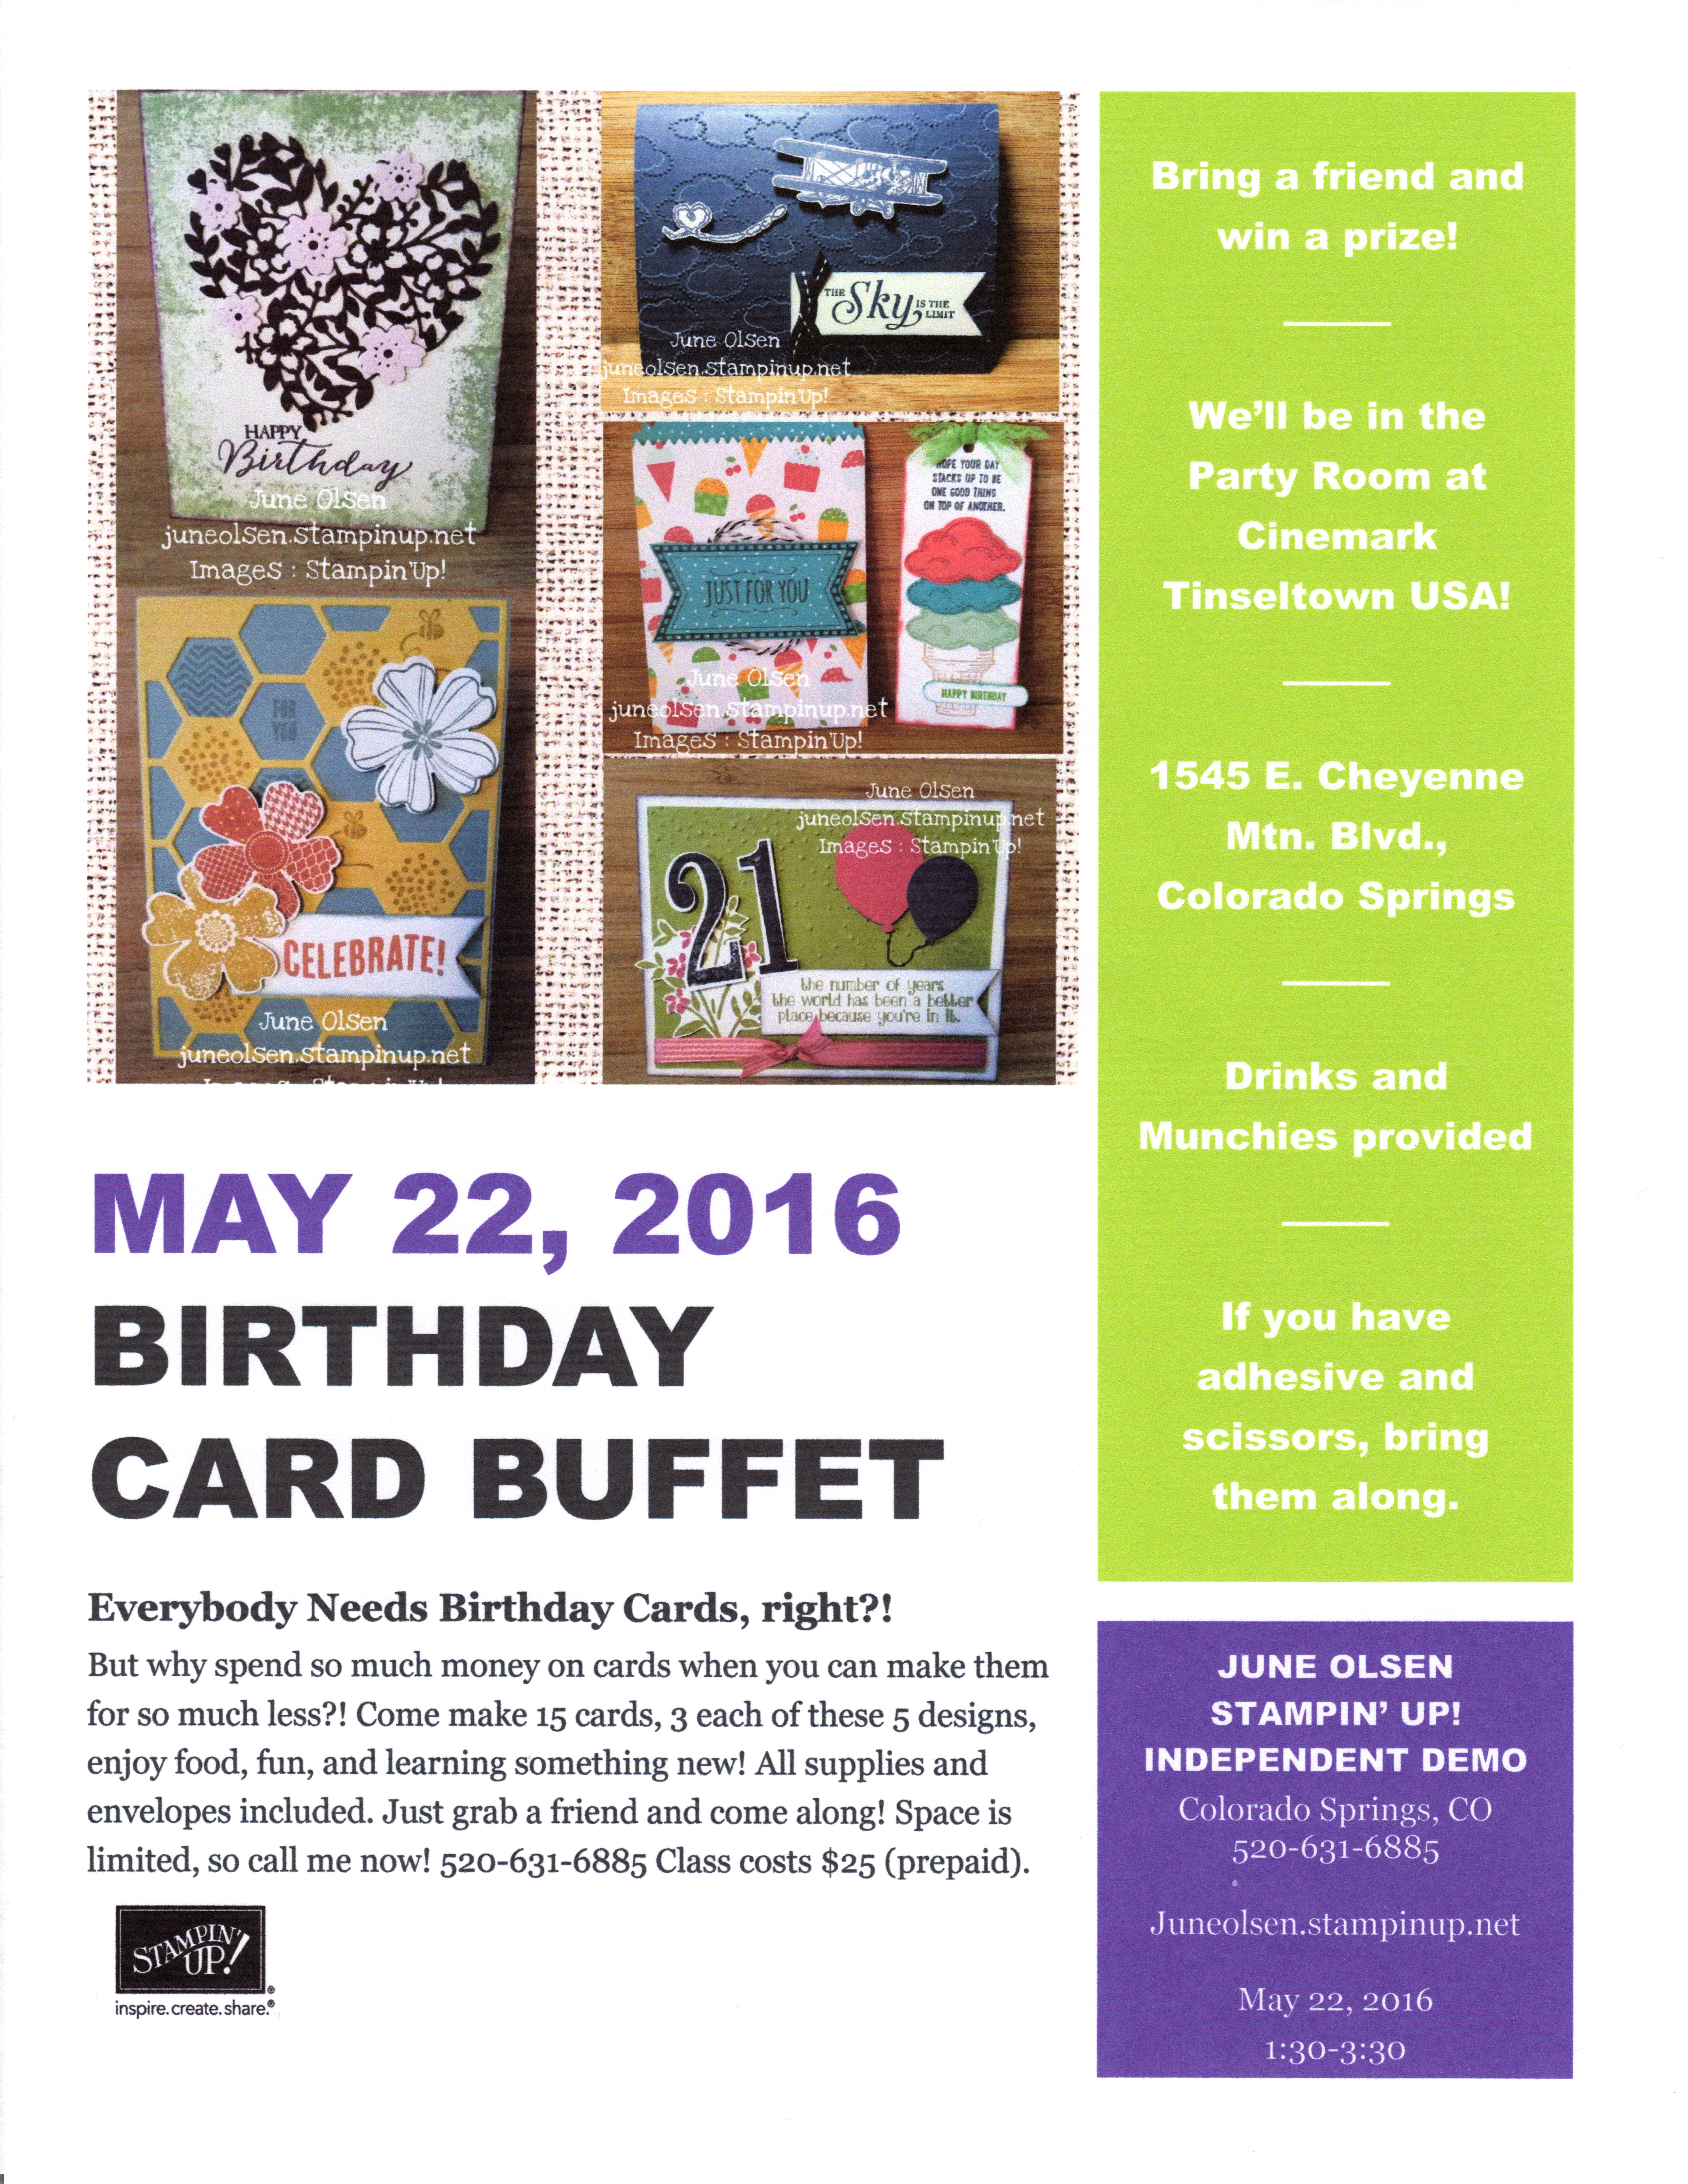 Bday Card Buffet flyer.5.16.jpg